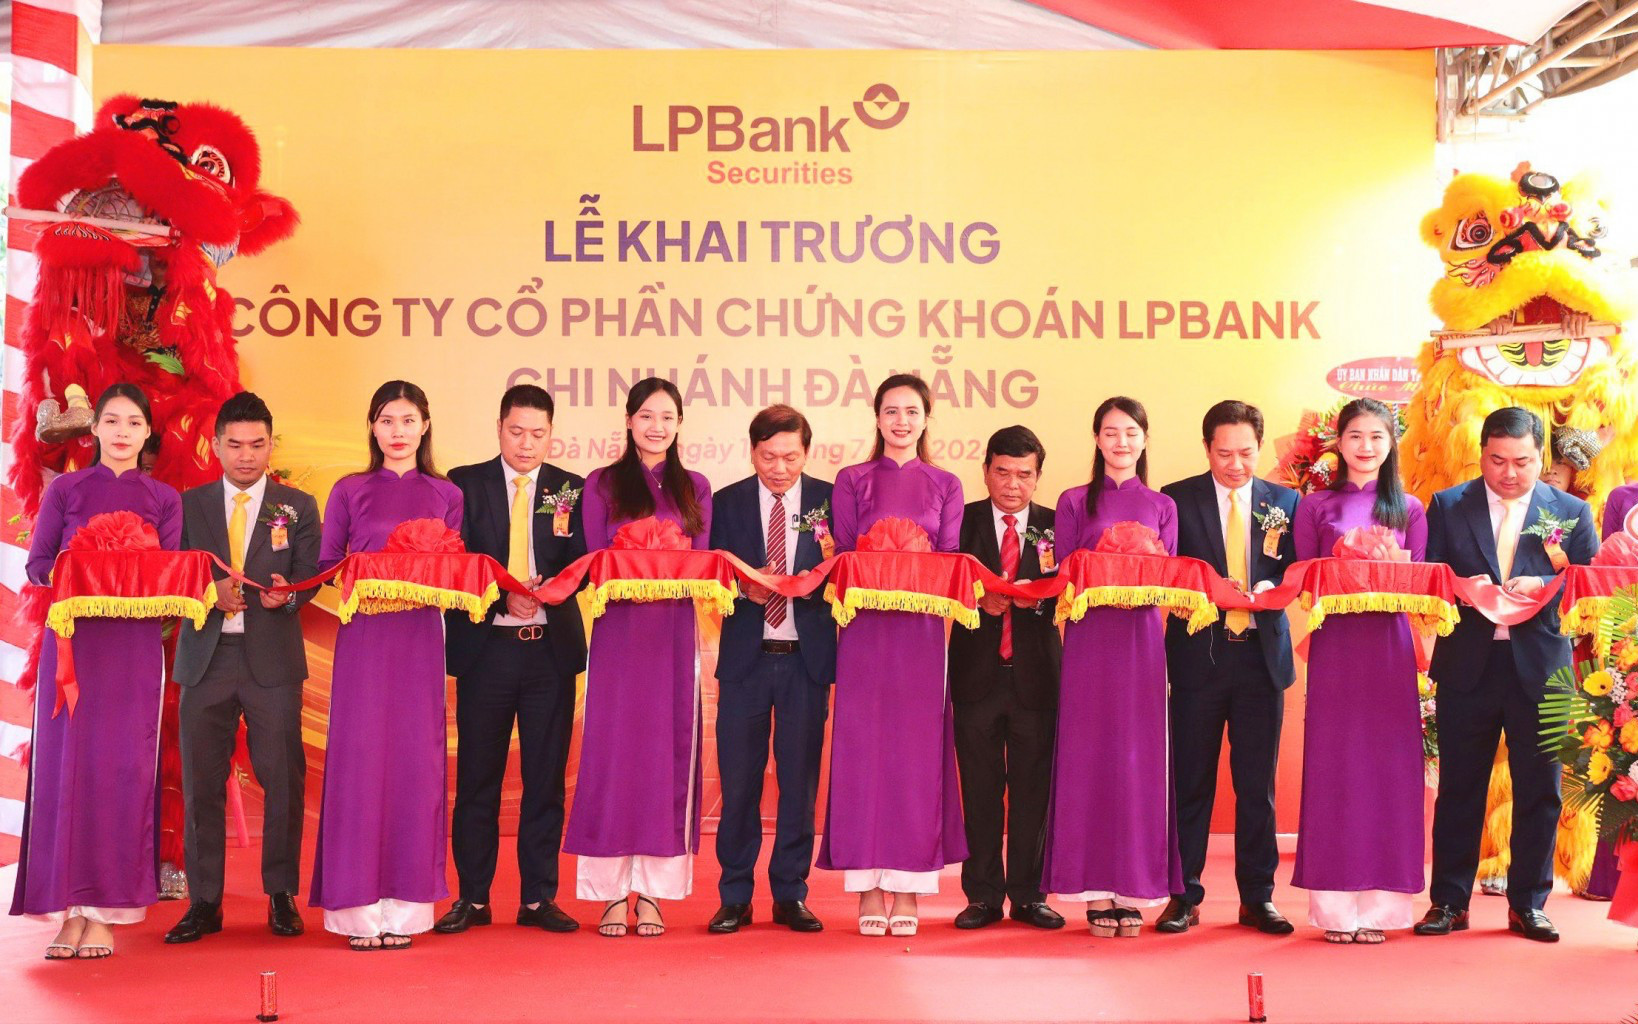 Chứng khoán LPBank khai trương Chi nhánh Đà Nẵng, bước đầu chiến dịch phủ sóng thương hiệu trên toàn quốc